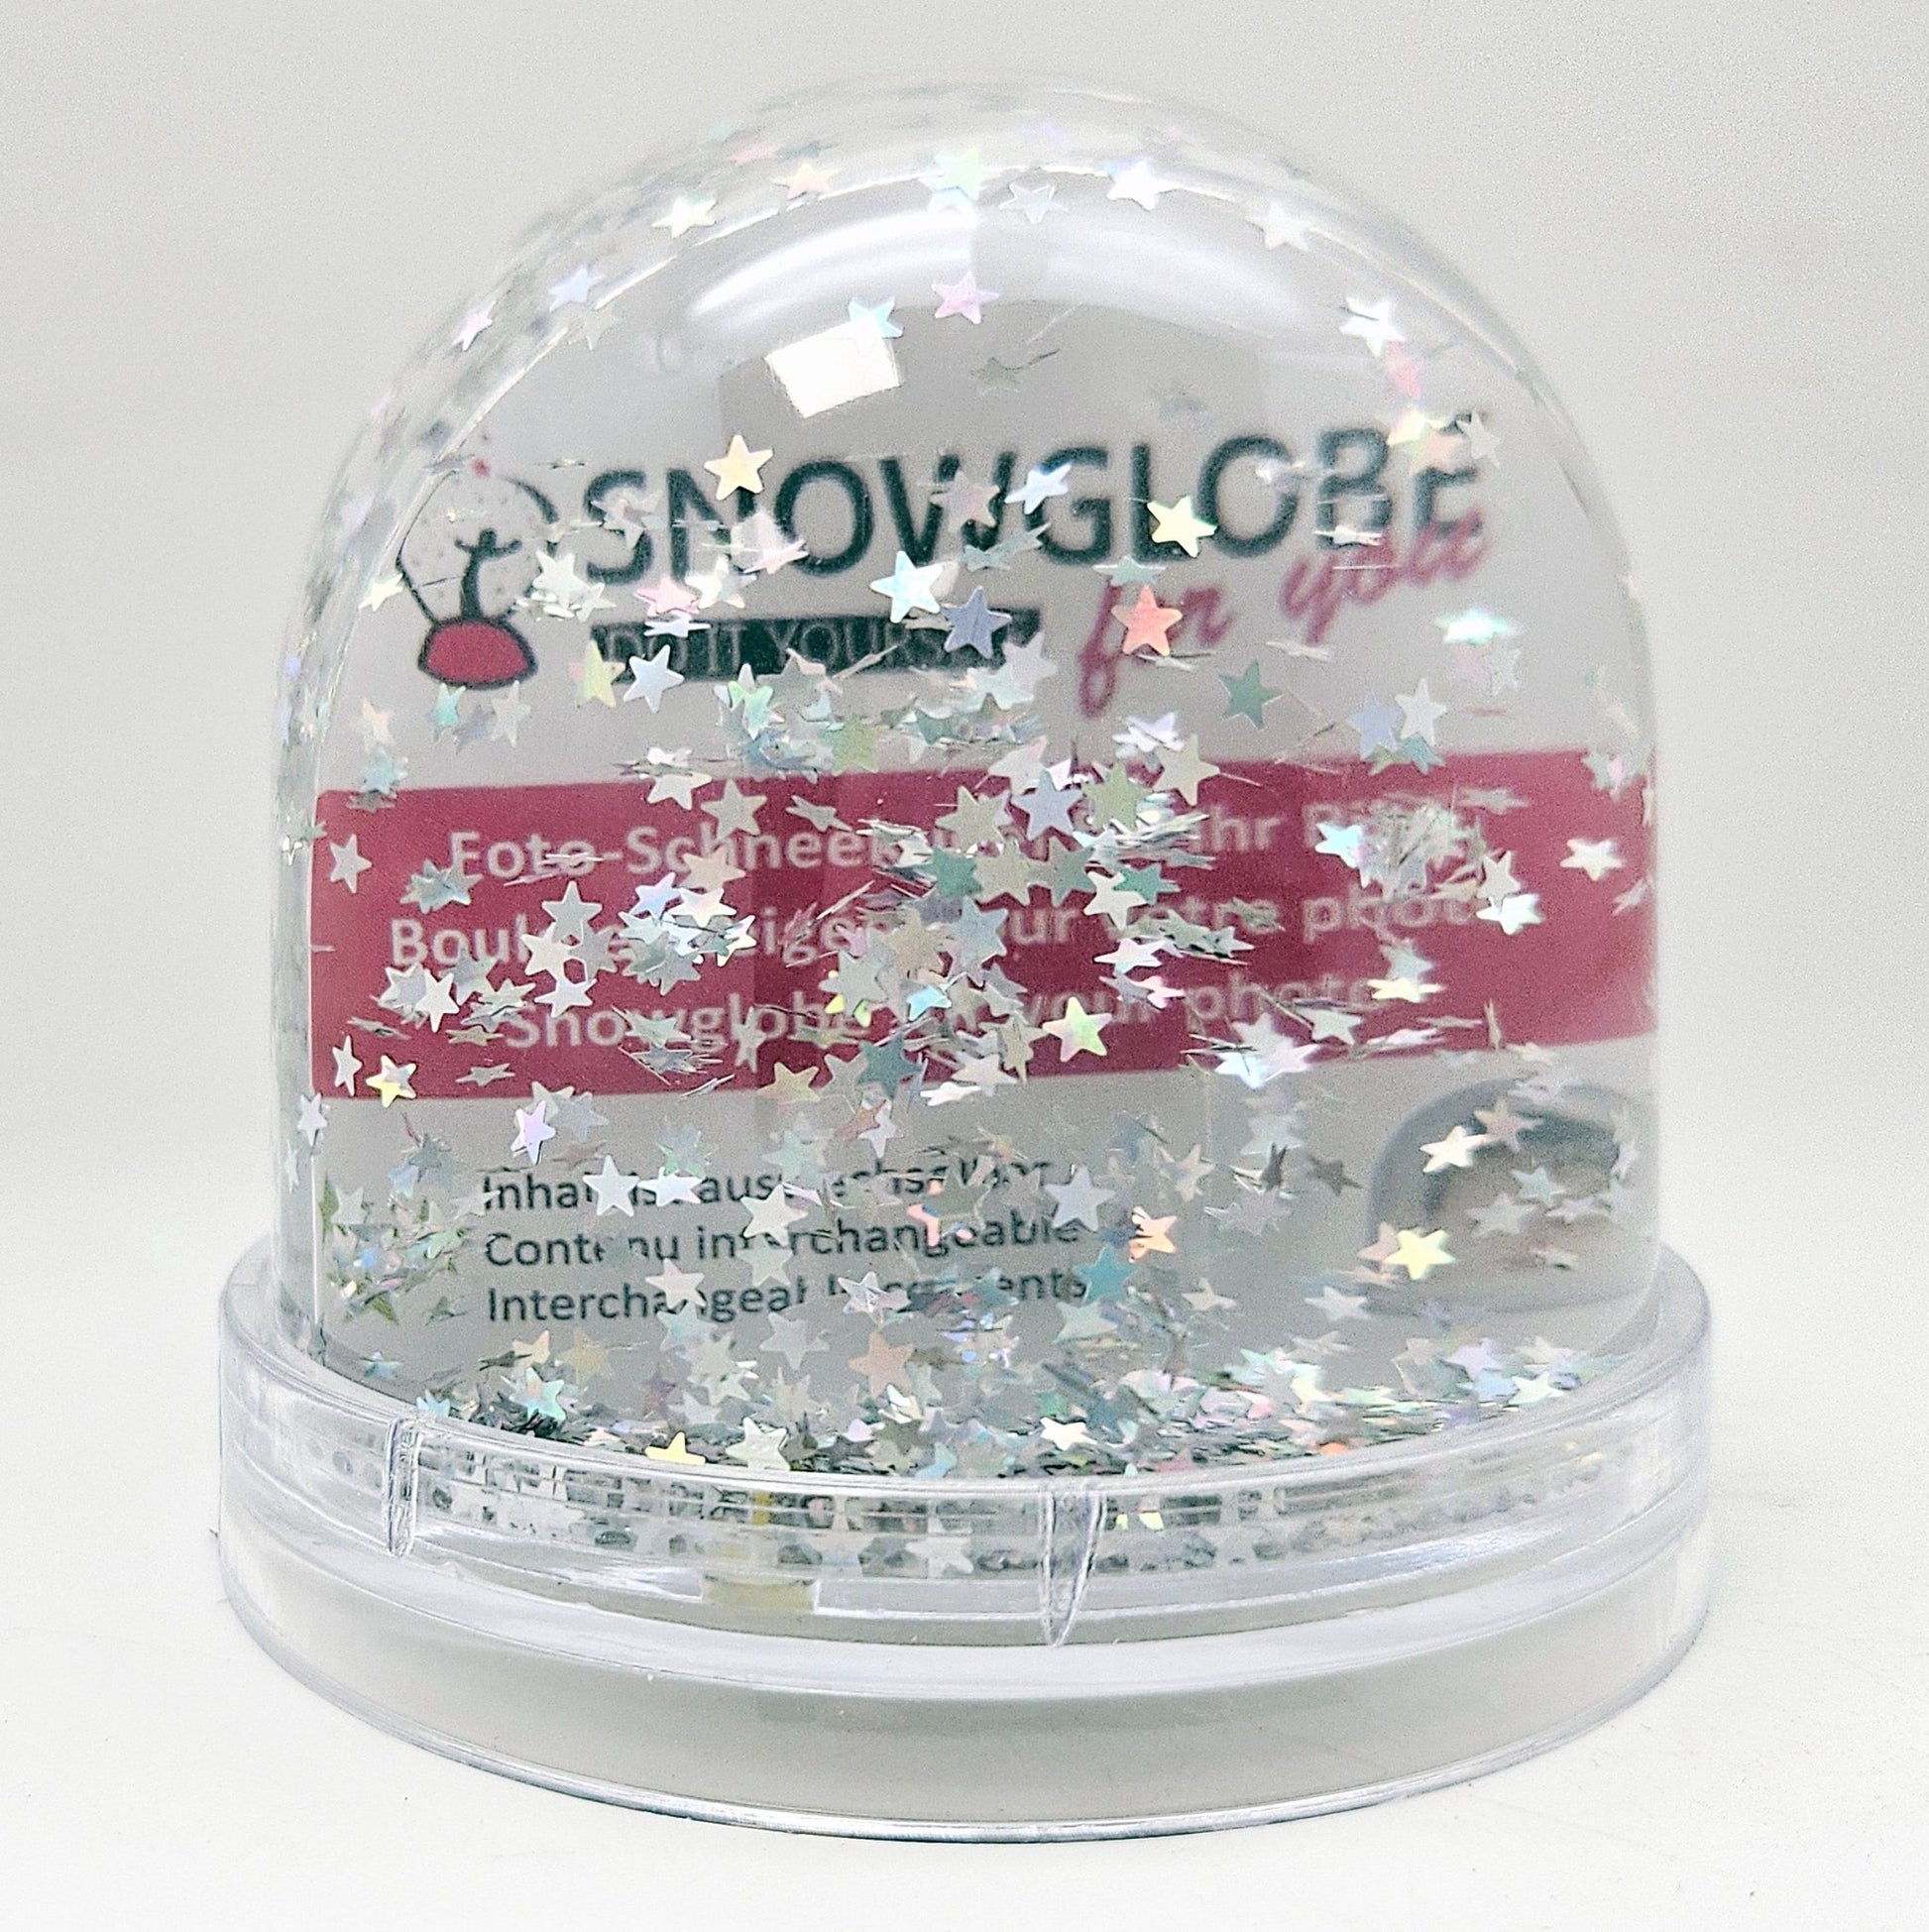 Foto-Schneekugel groß mit transparentem Sockel - silber Sterne - Schneekugelhaus